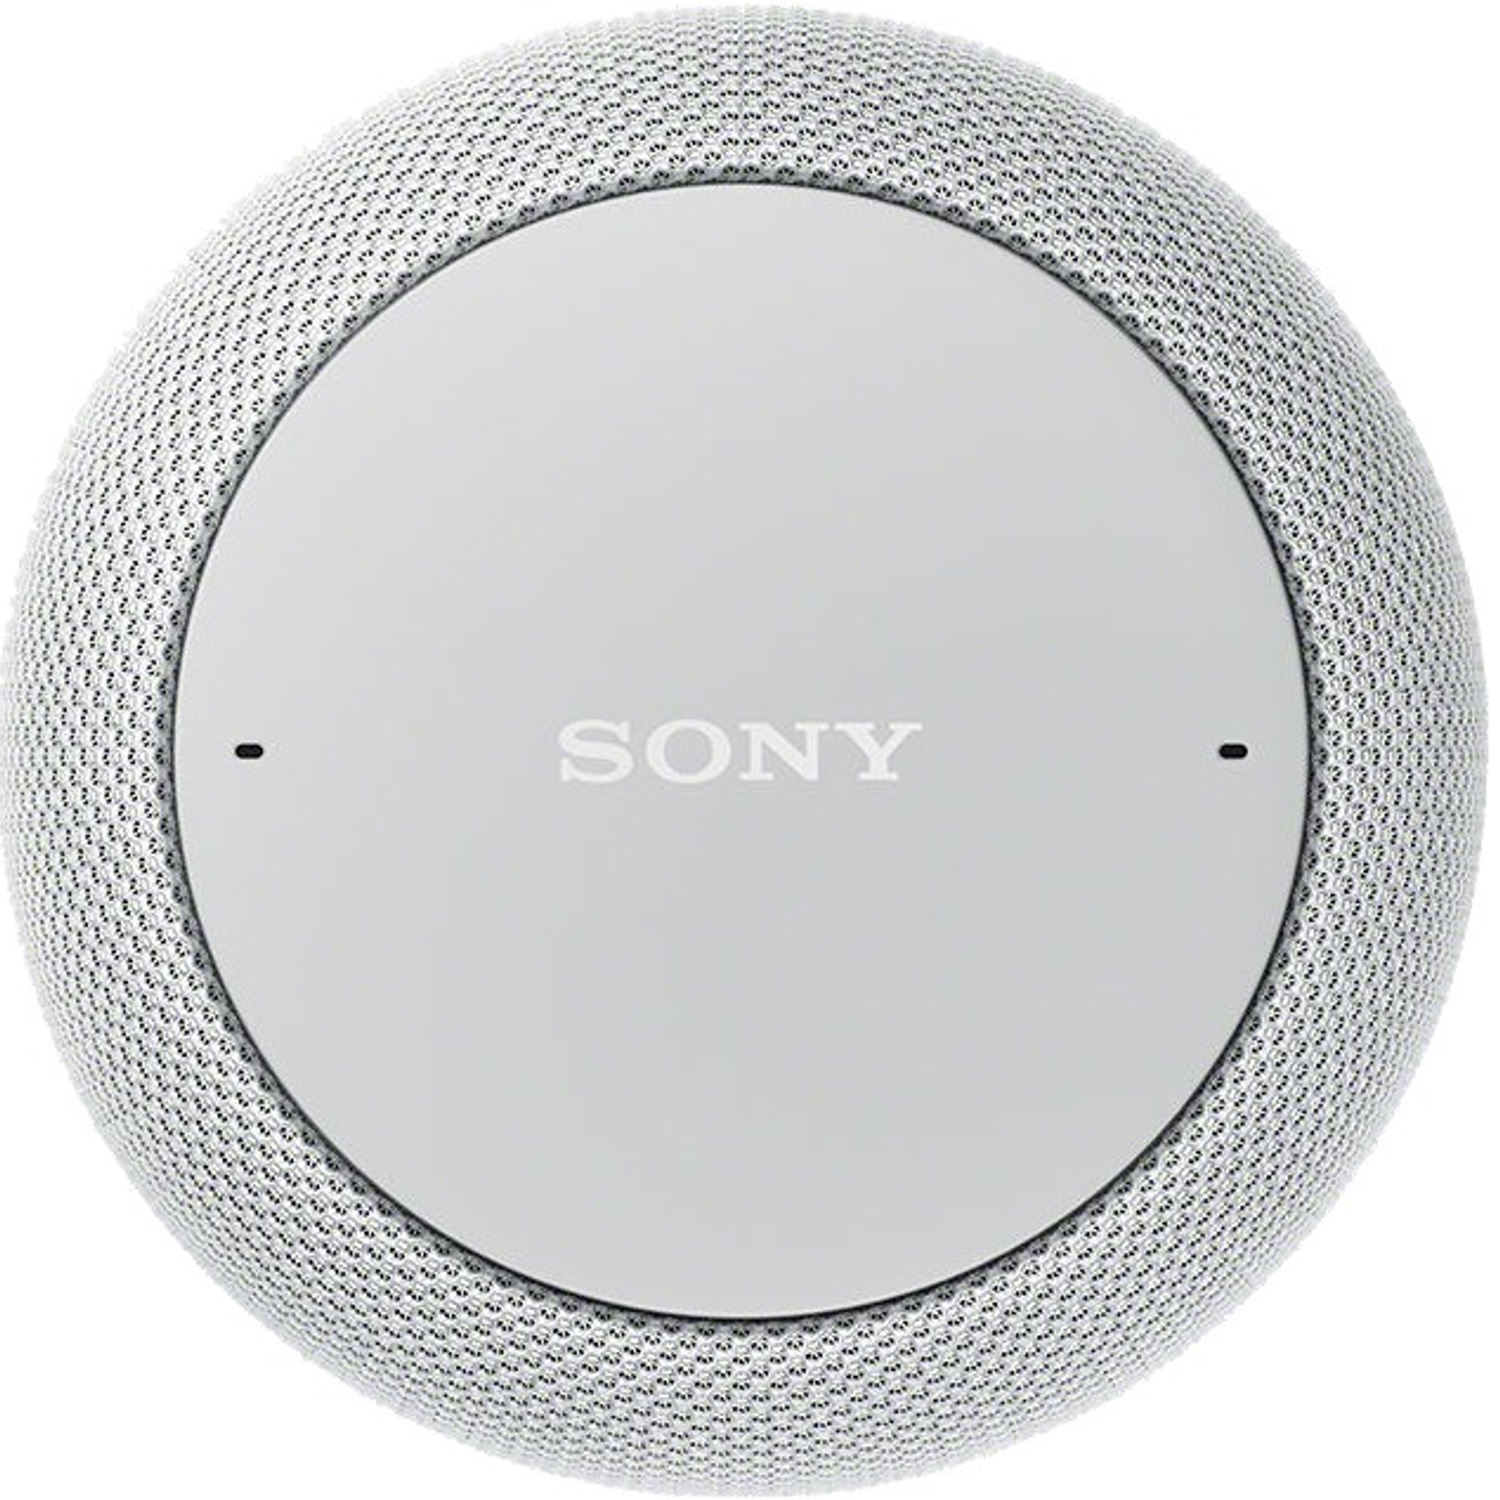 Sony Speaker White Wireless Smart Speaker Google Assistant - WiFi - 3